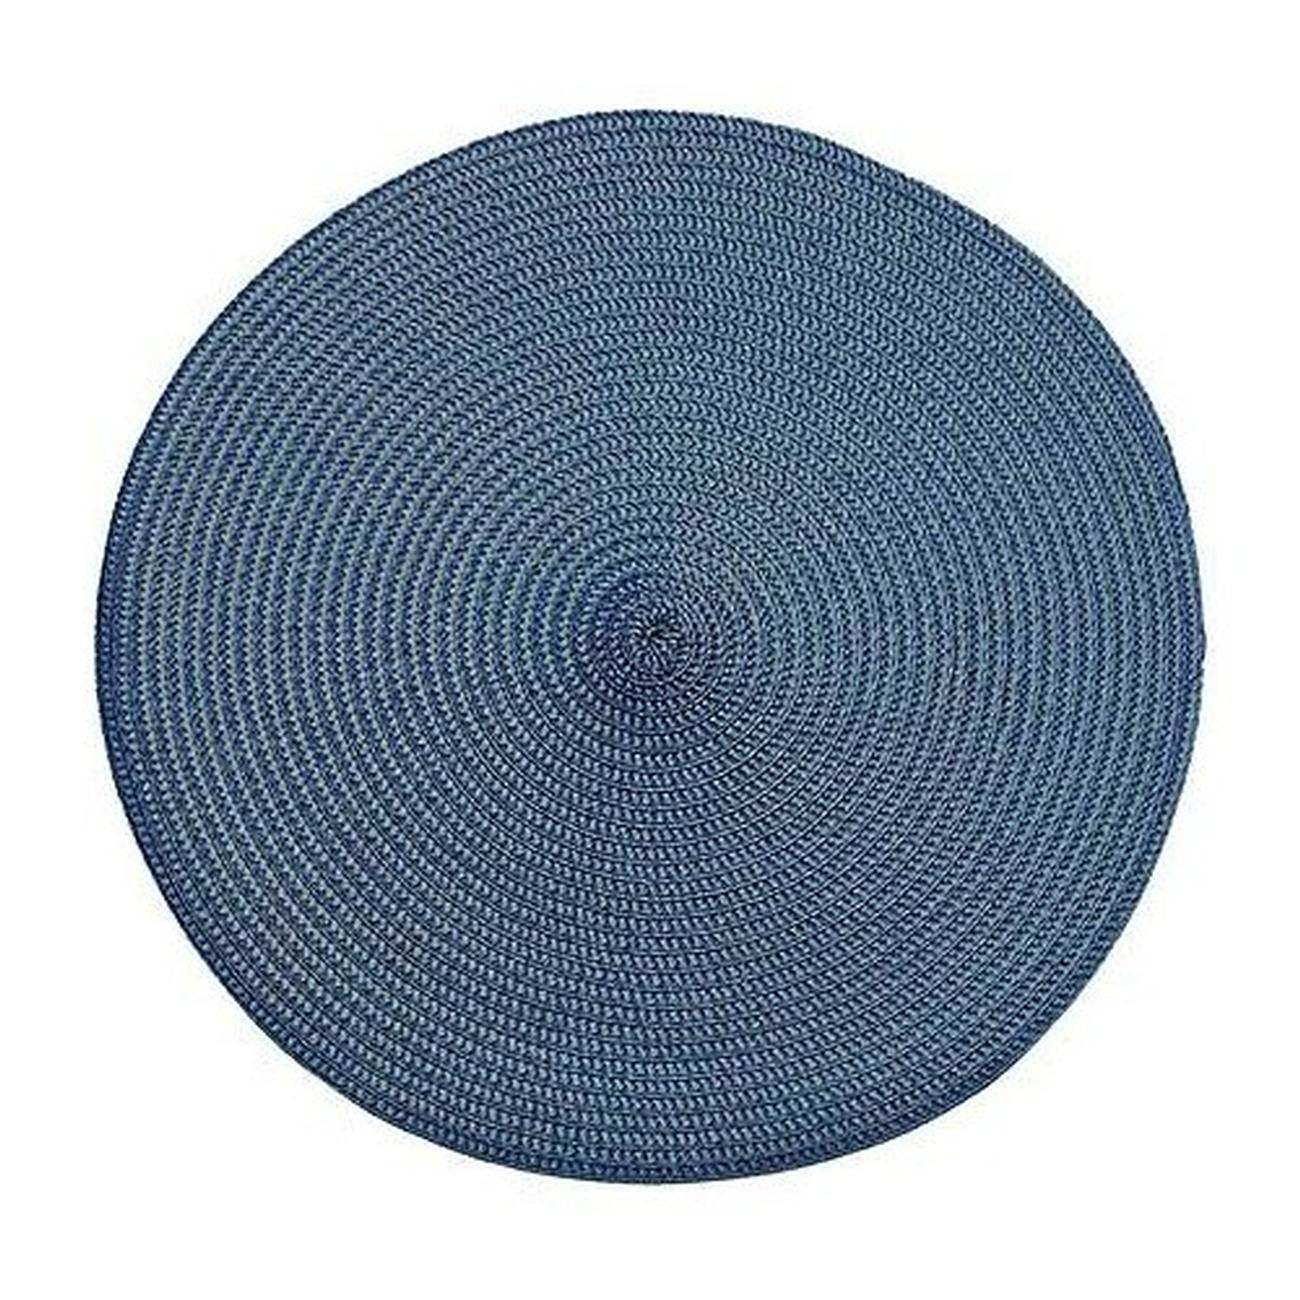 walton-ribbed-round-placemat-slate-blue - Walton & Co Circular Ribbed Placemat Slate Blue